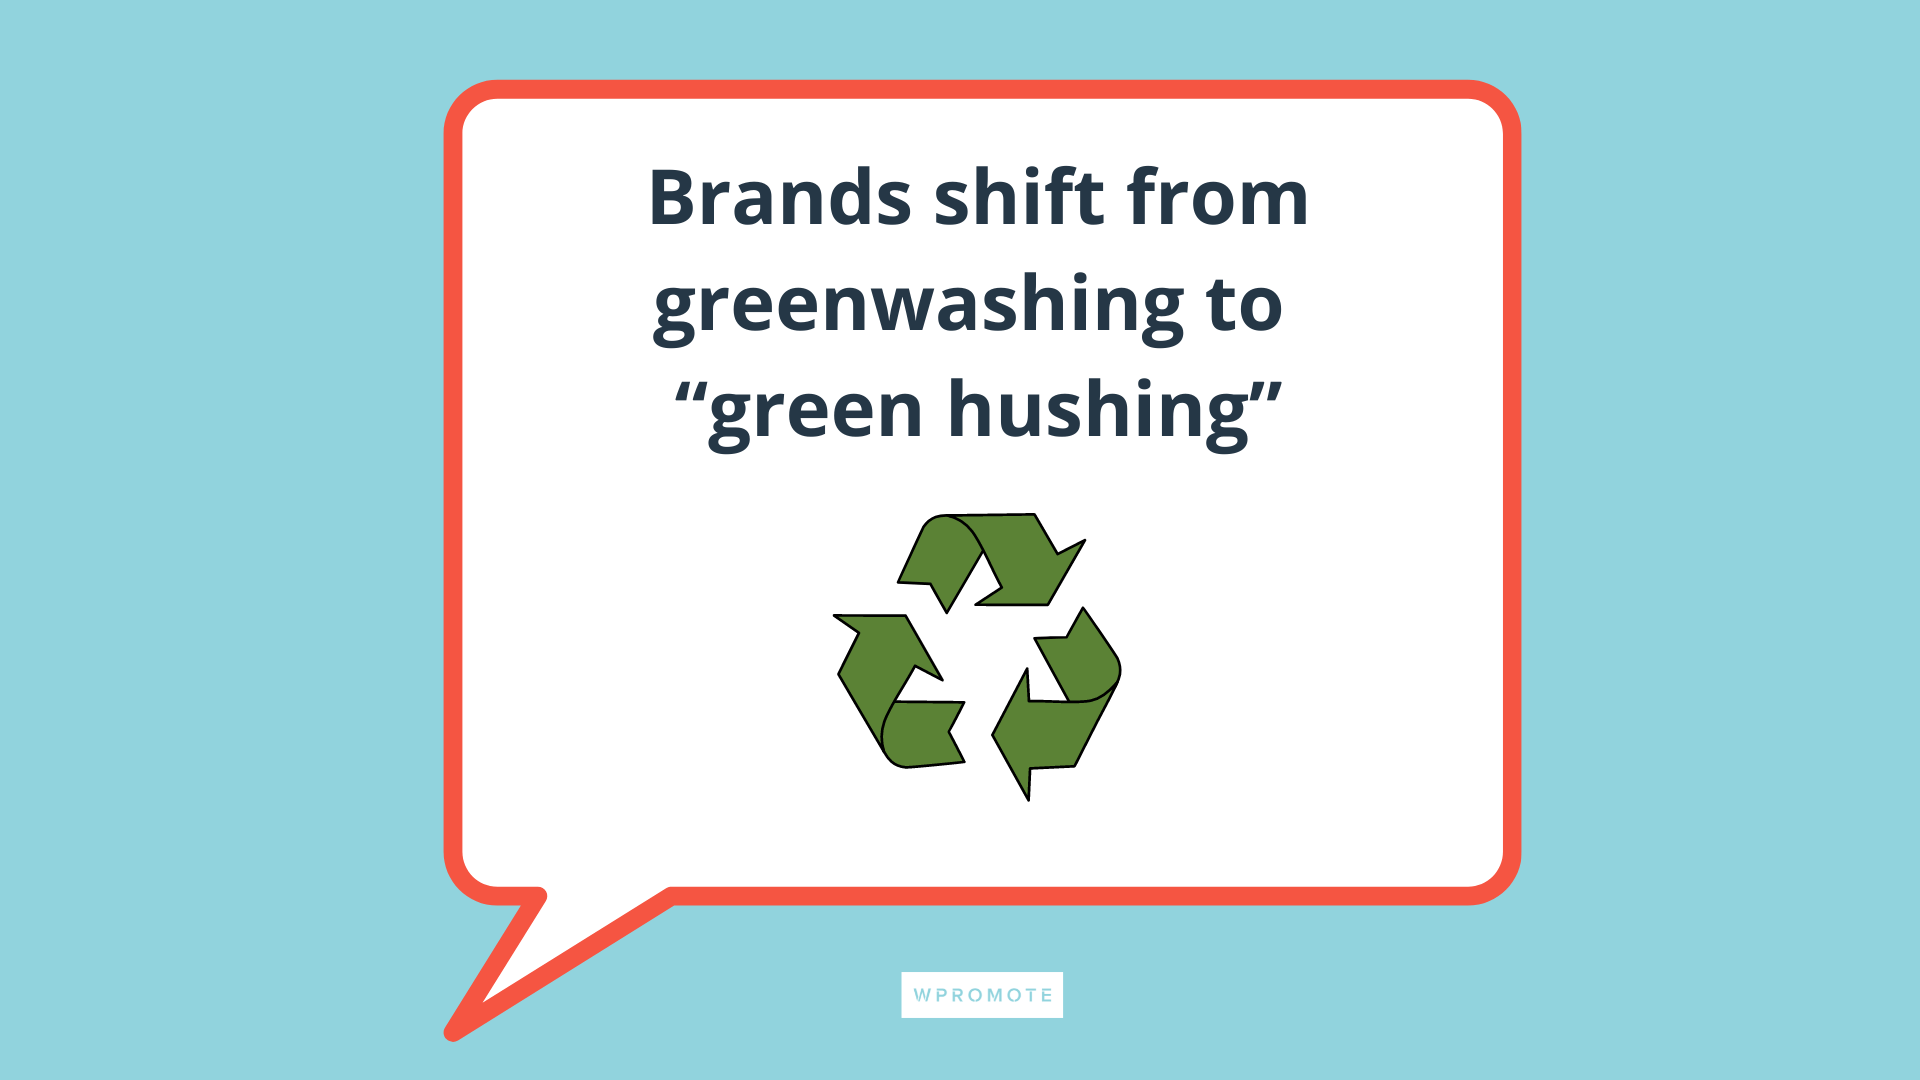 تحولت العلامات التجارية من الغسل الأخضر إلى الصمت الأخضر